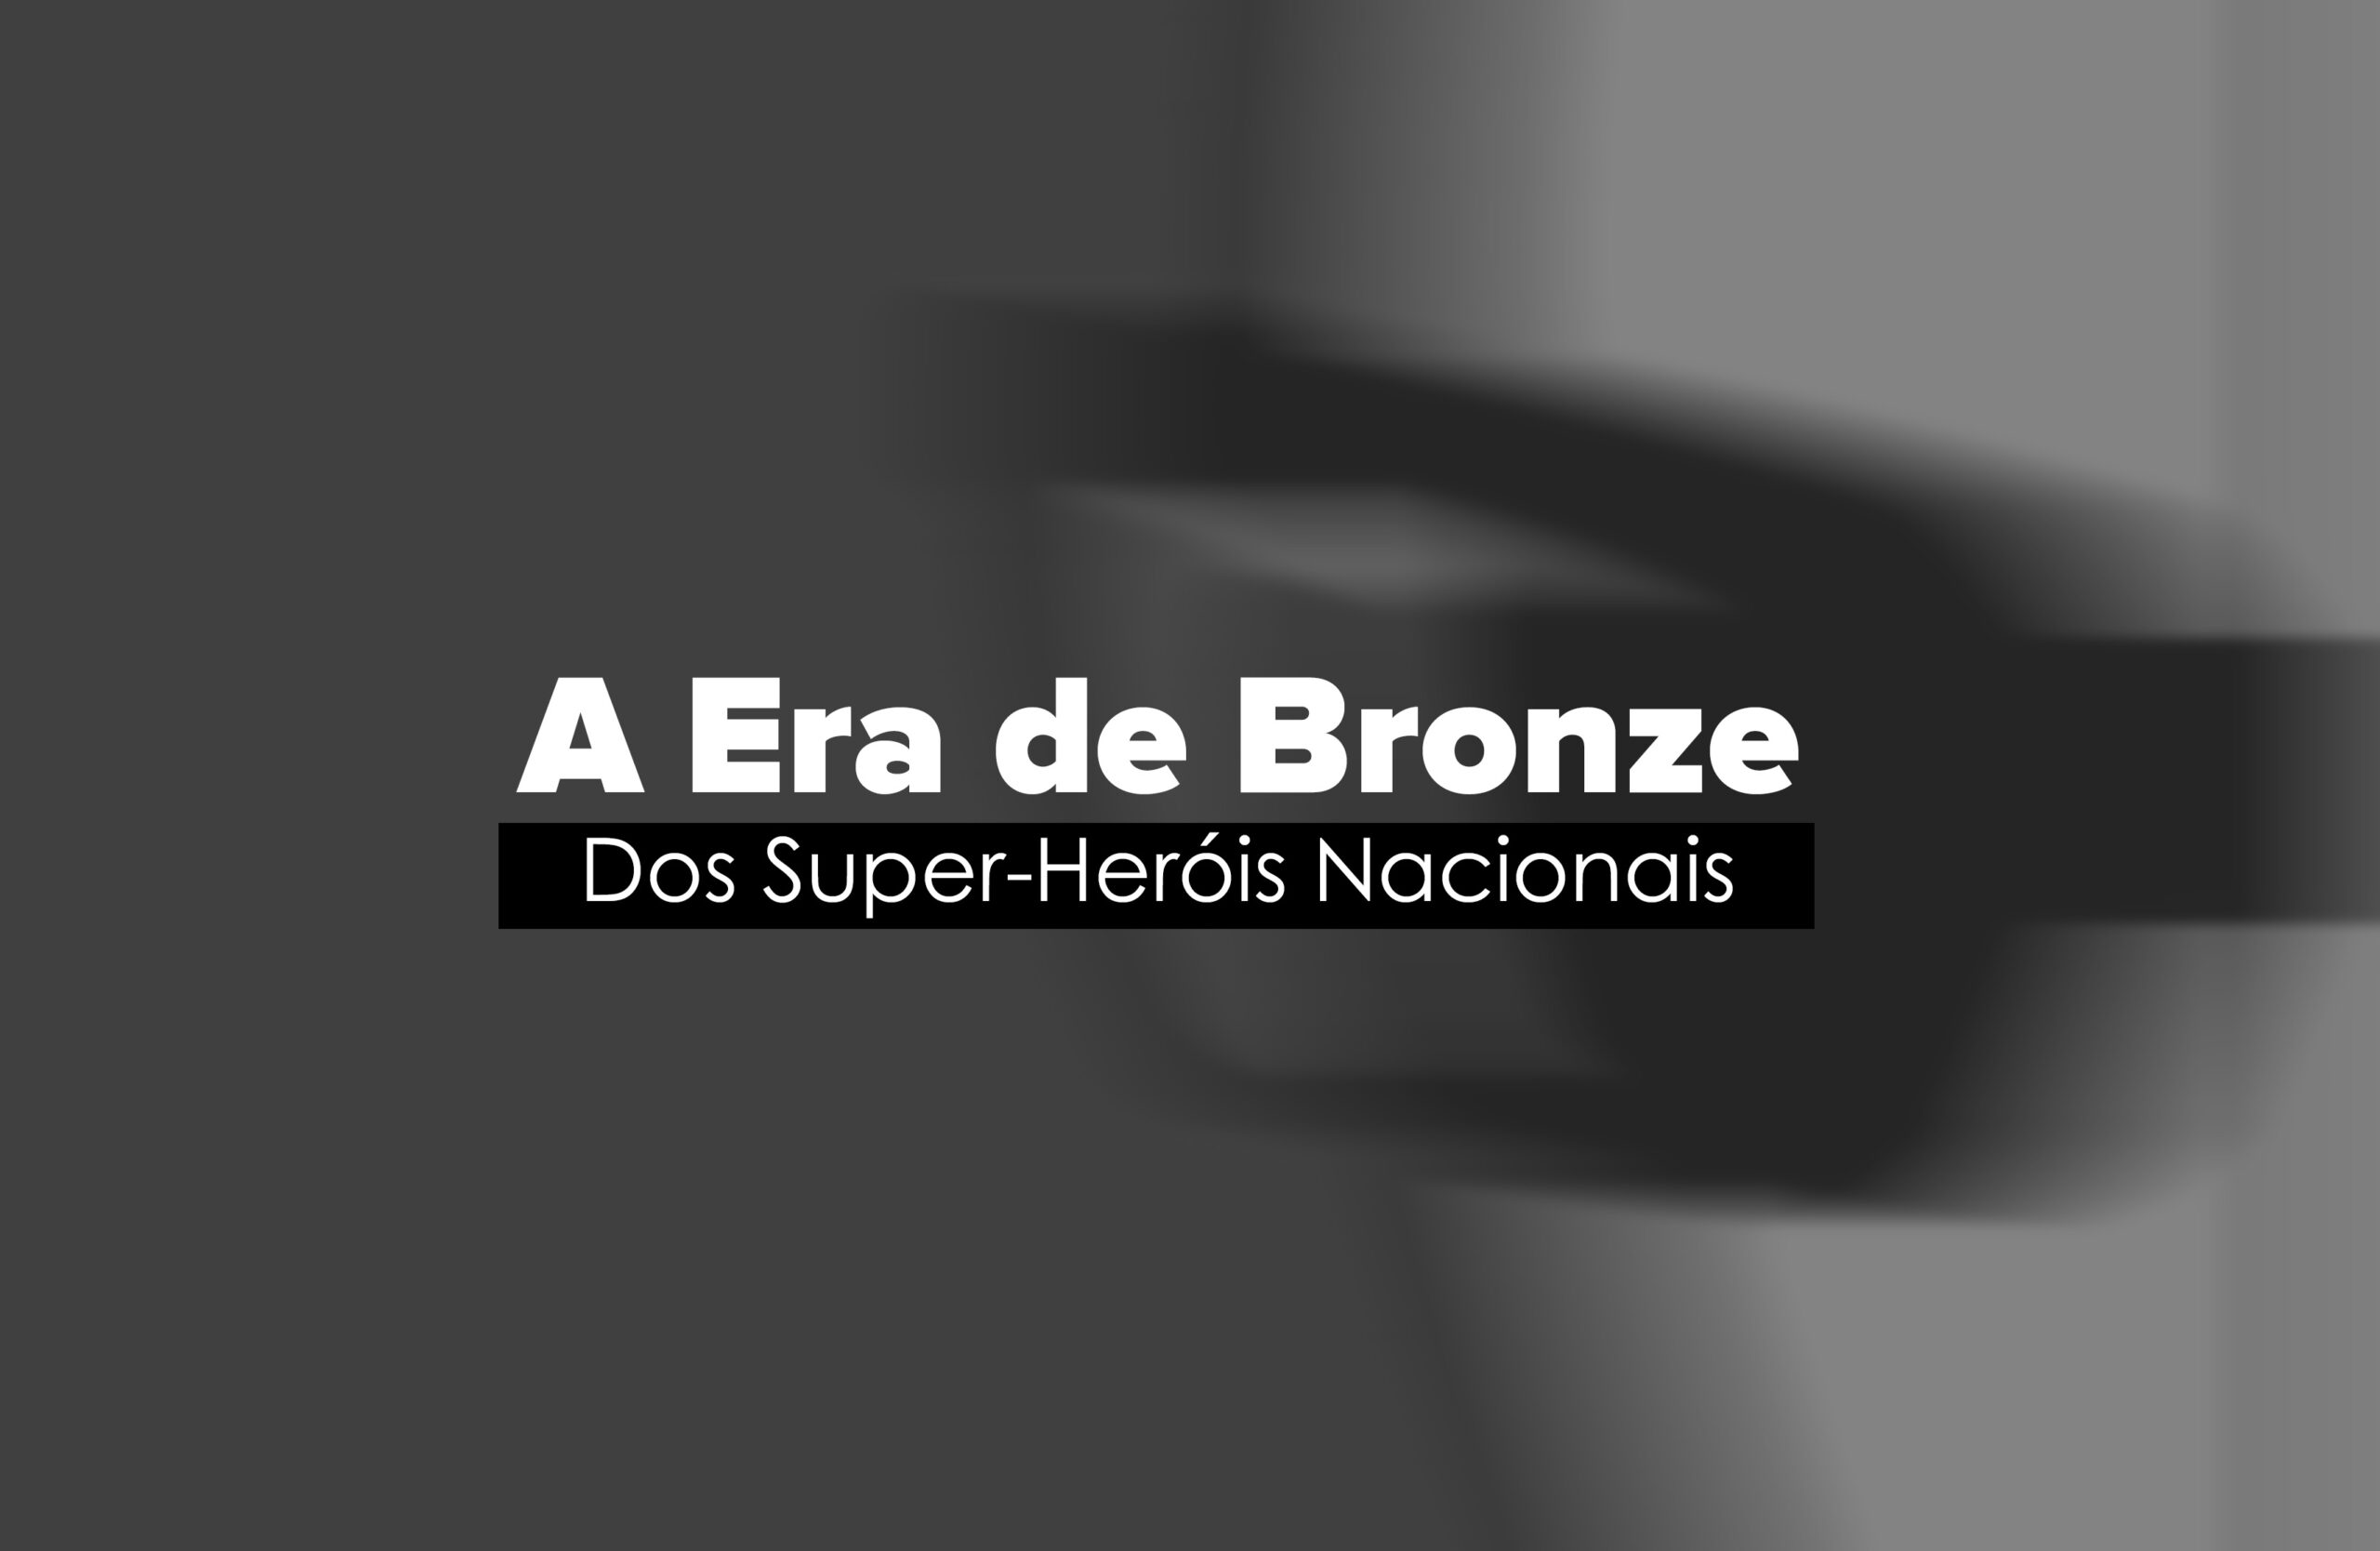 A Era de Bronze do Super-Heróis Nacionais 10